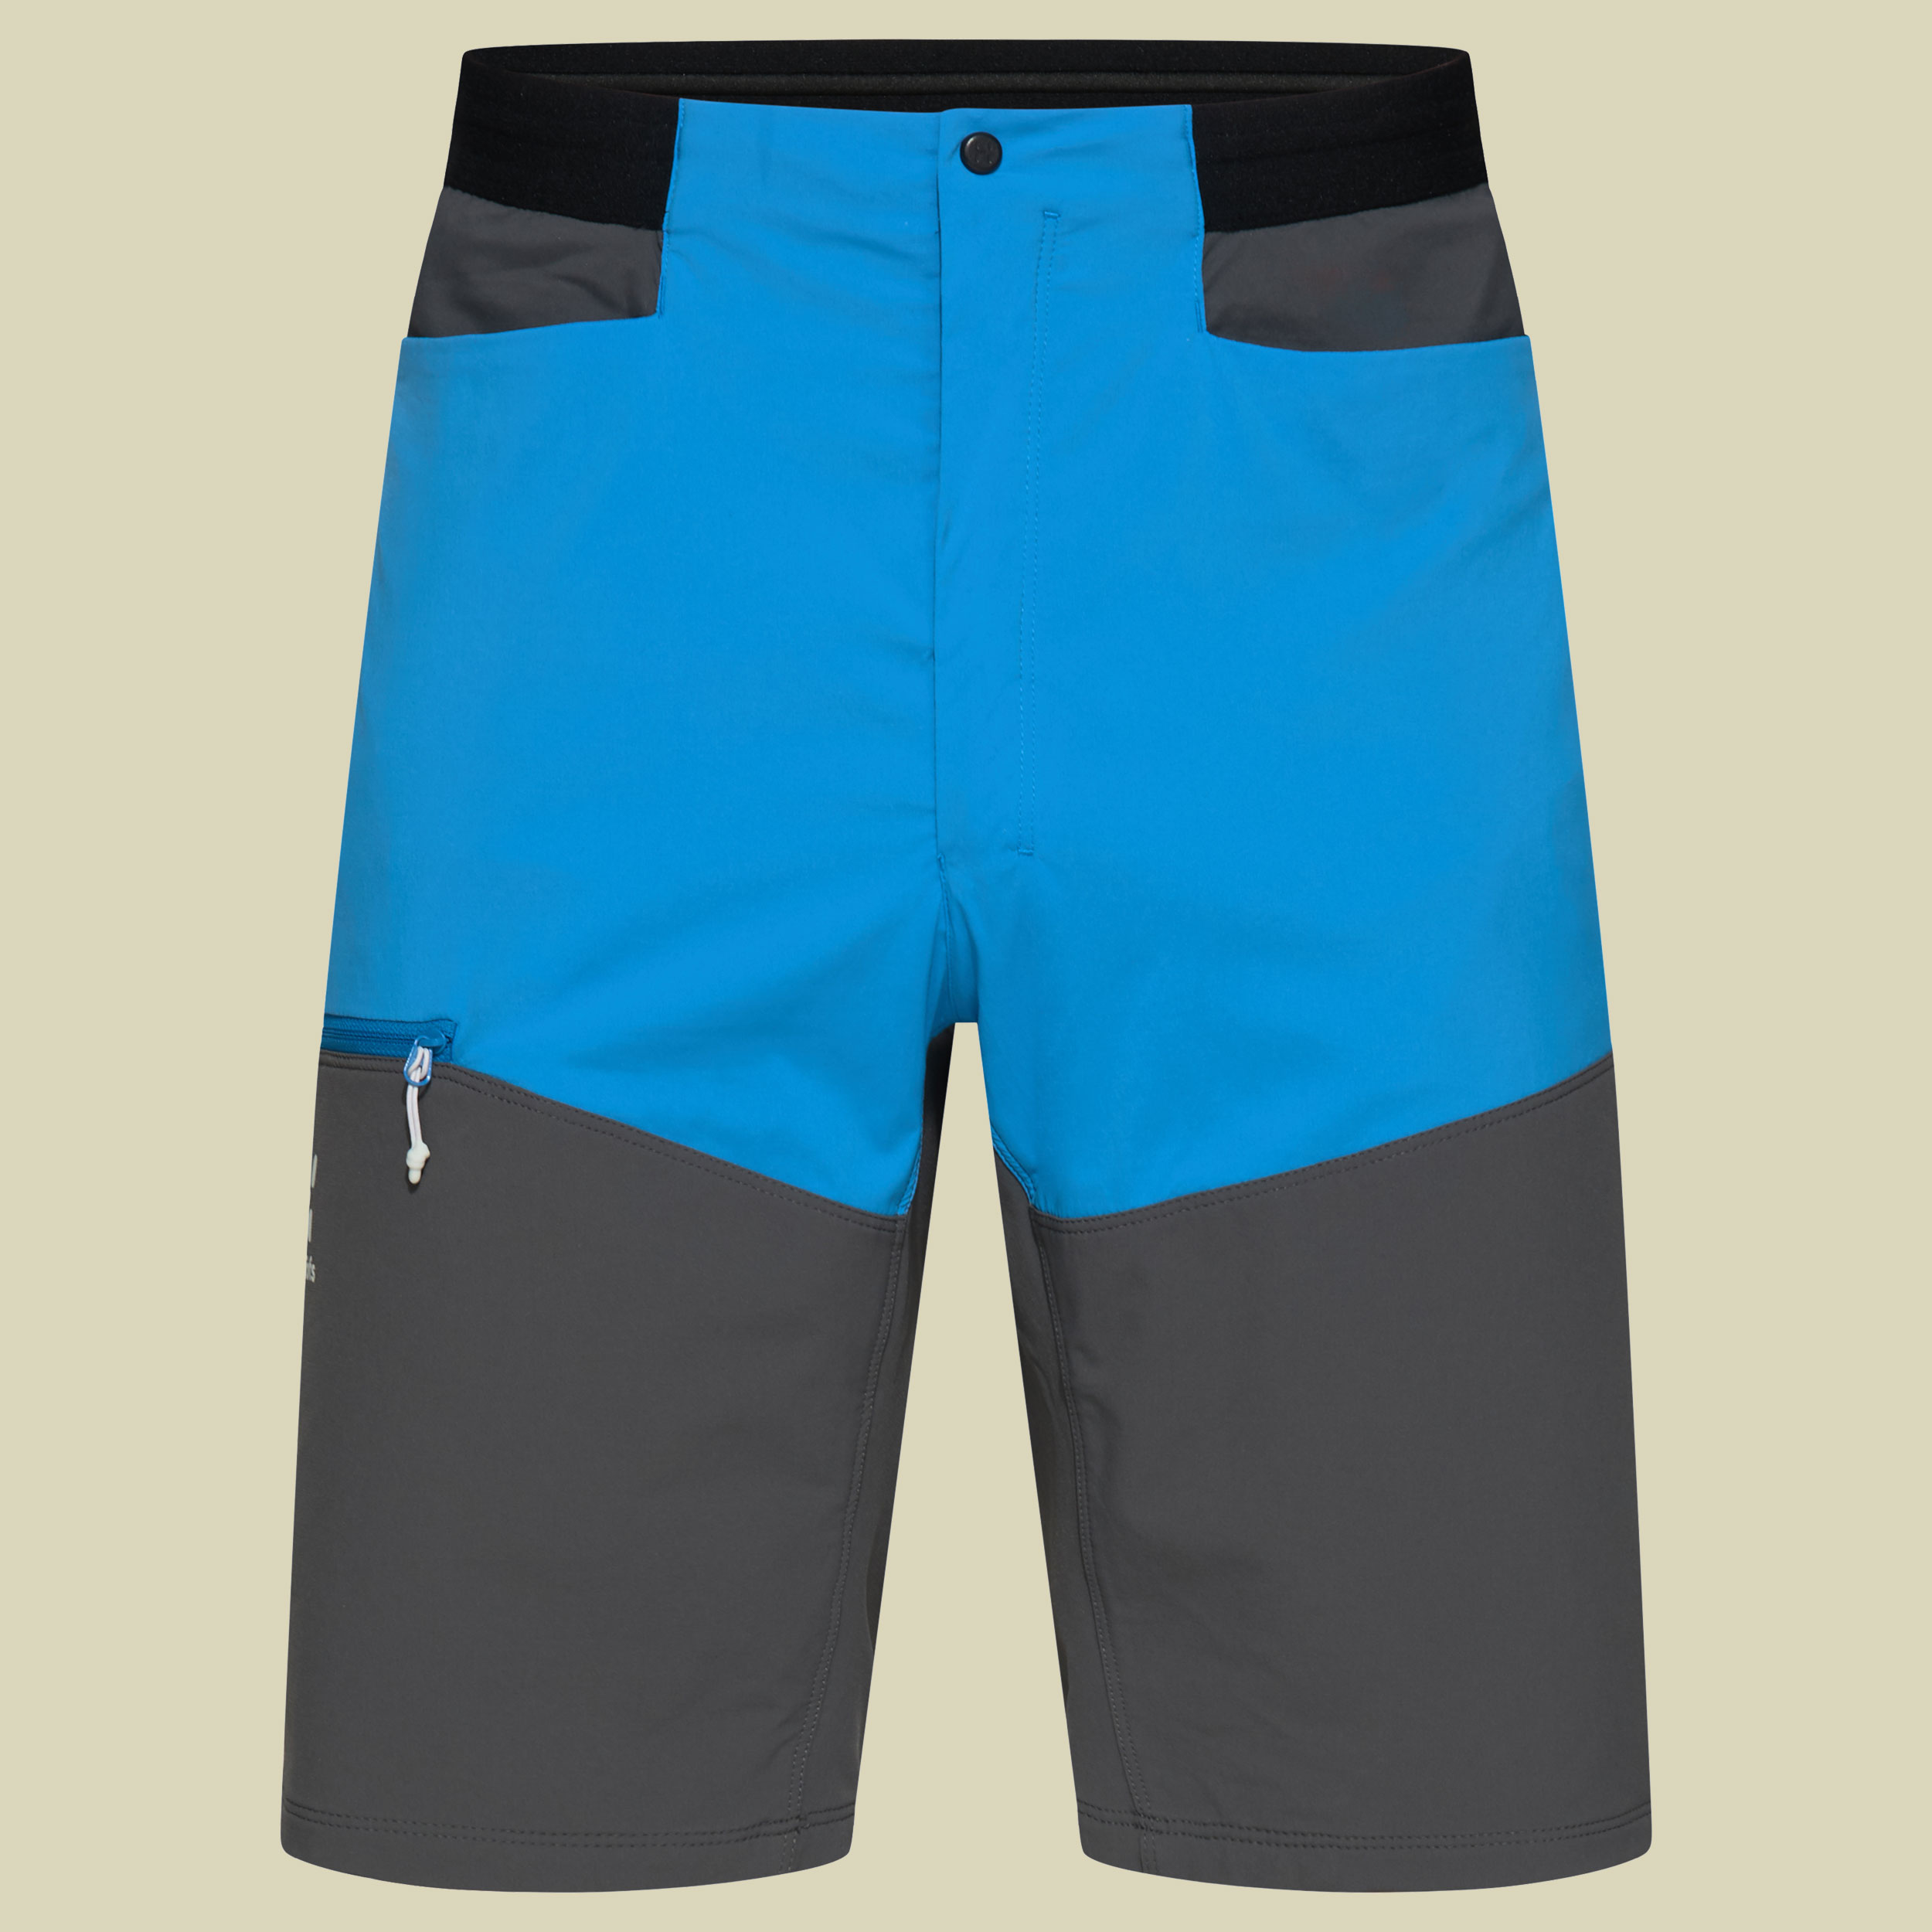 L.I.M Rugged Shorts Men Größe 54 Farbe nordic blue/magnetite